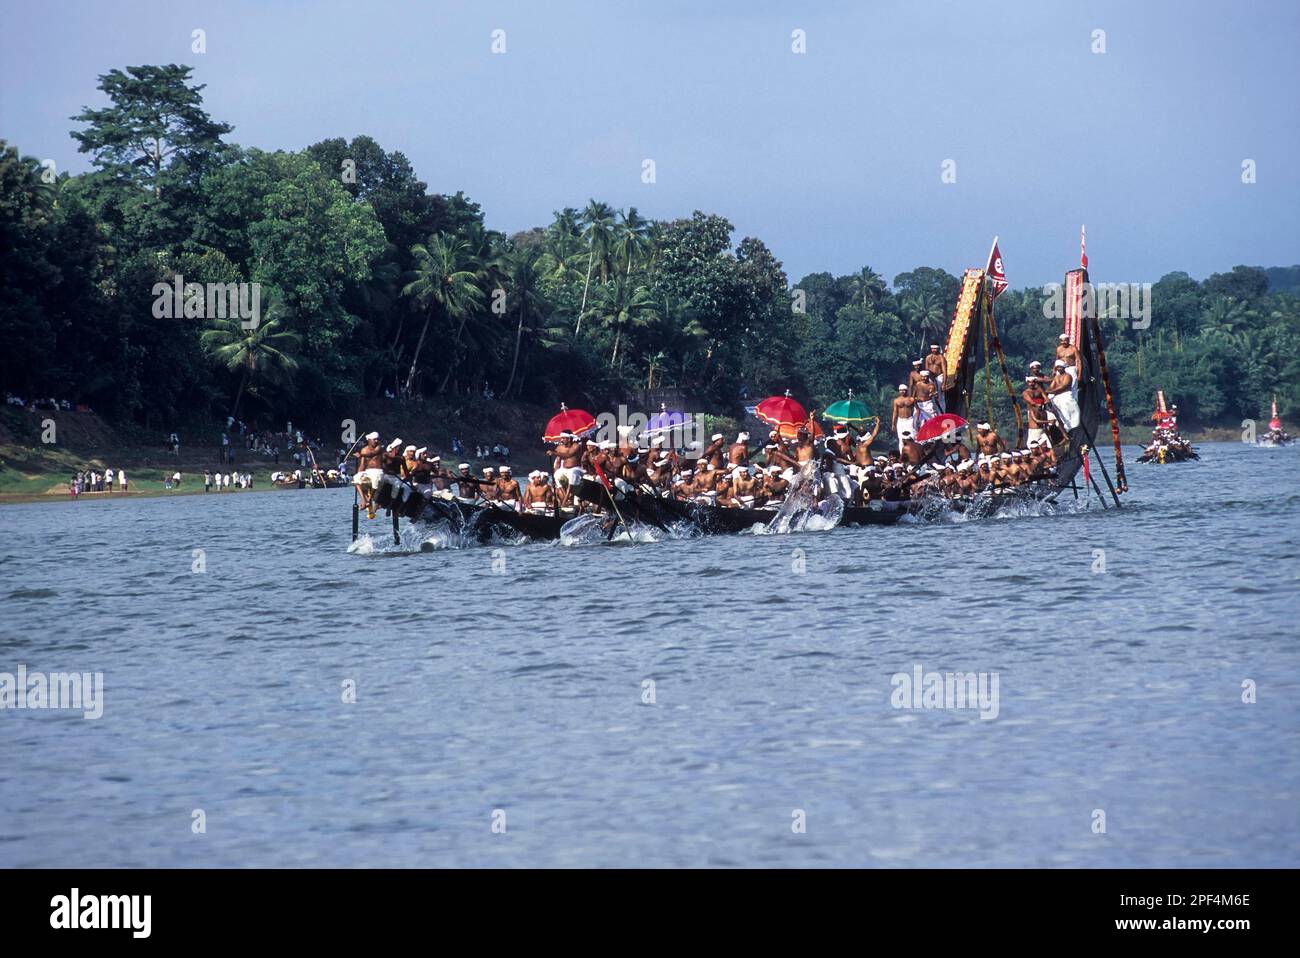 Le festival Aranmula Vallamkali ou la course de bateaux de serpent, qui se tient sur la rivière Pampa pendant le festival Onam à Aranmula, Kerala, Inde, Asie Banque D'Images